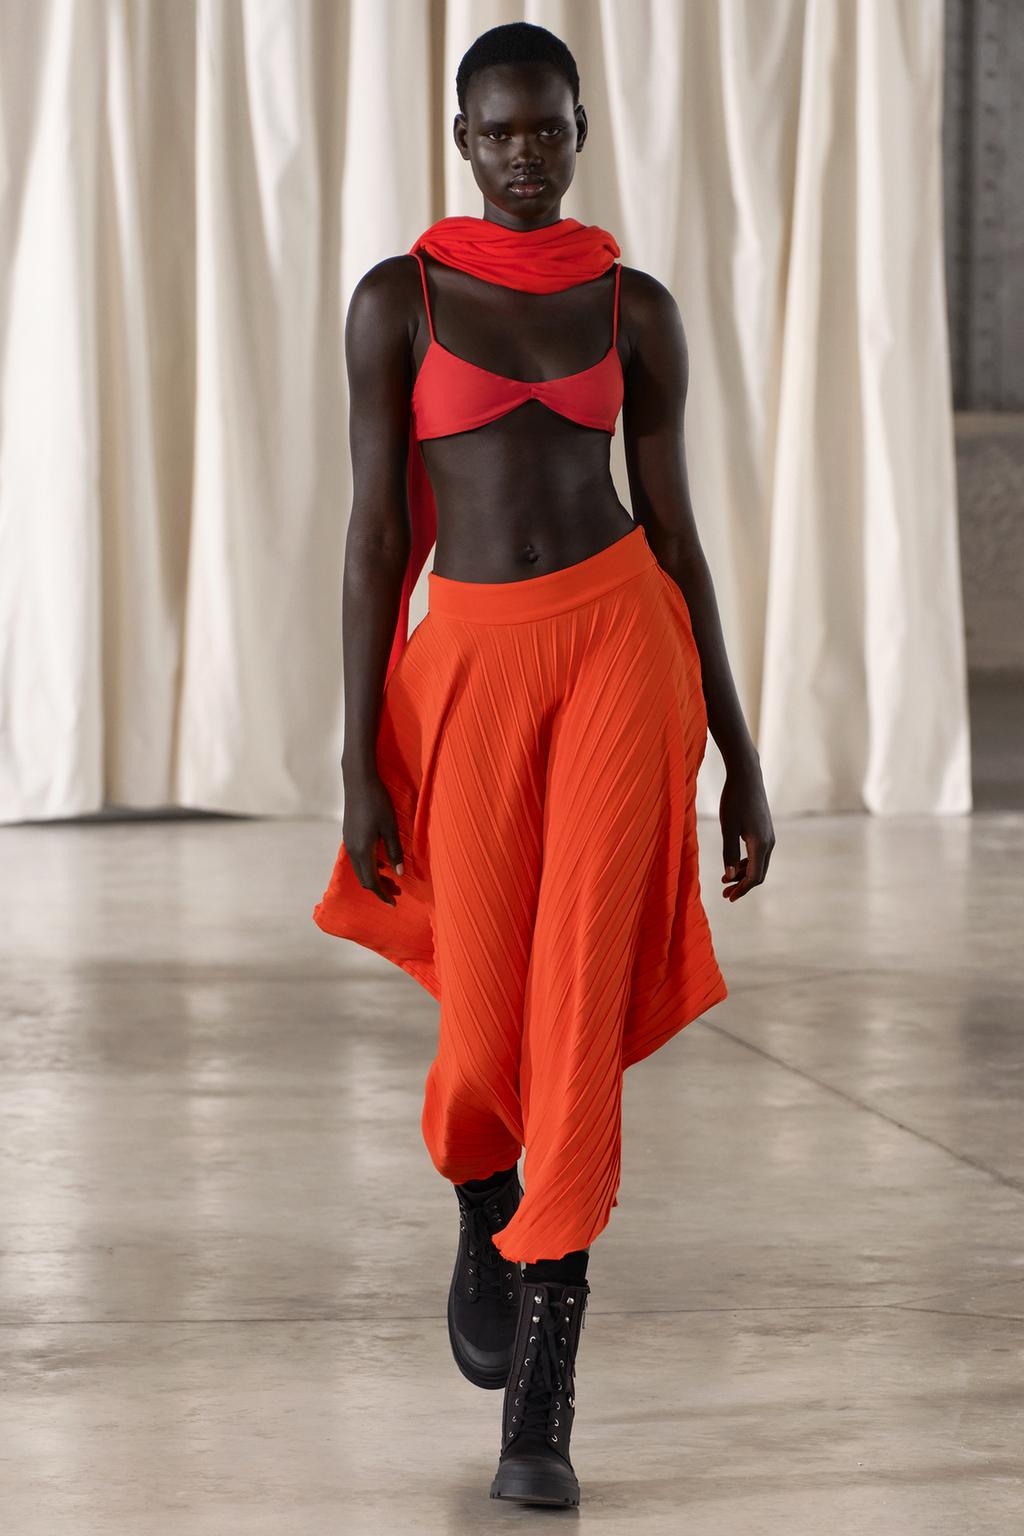 Асимметричная юбка со склисами ZARA, красный апельсин женская плиссированная мини юбка из пу кожи с высокой талией